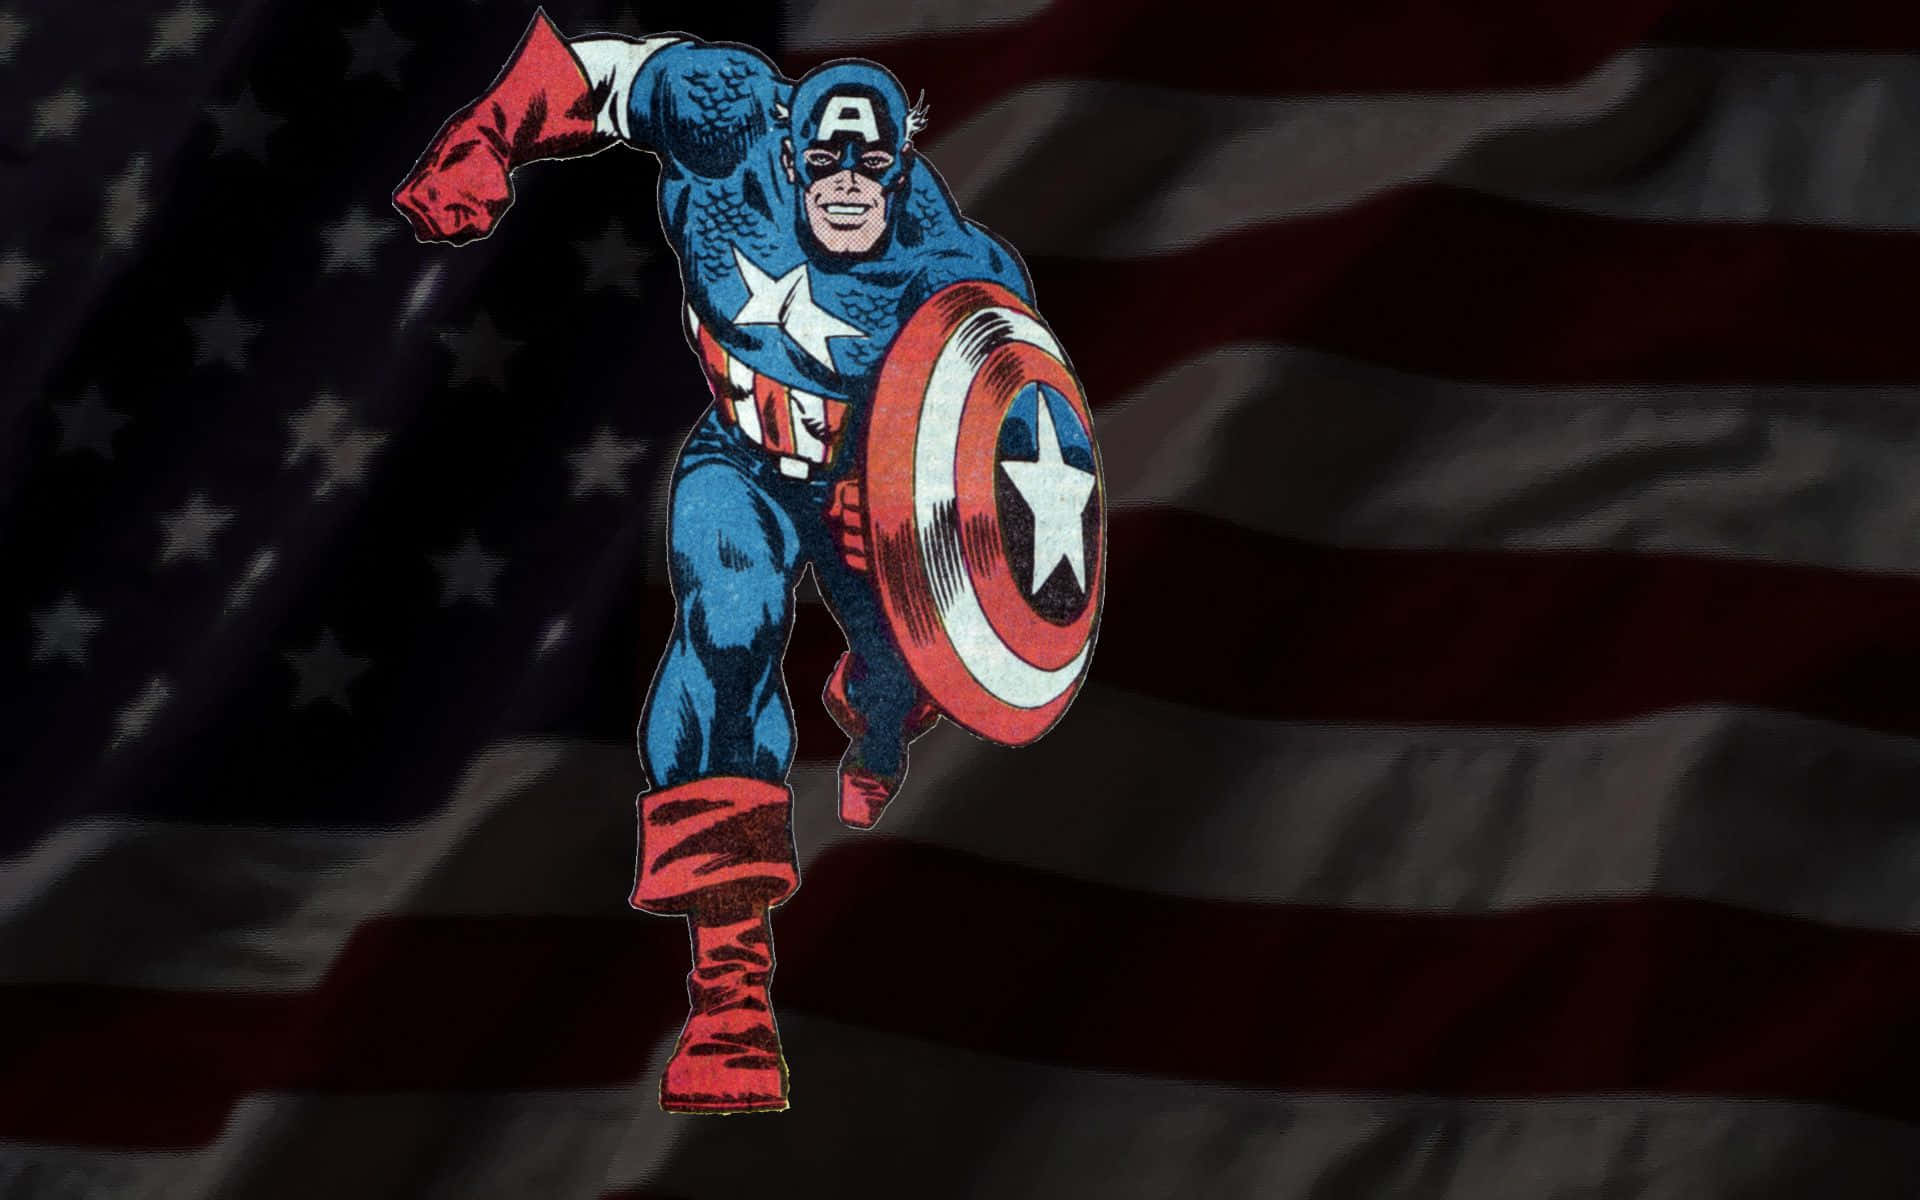 Wallpaperretro-inspirerad Captain America Wallpaper. Wallpaper